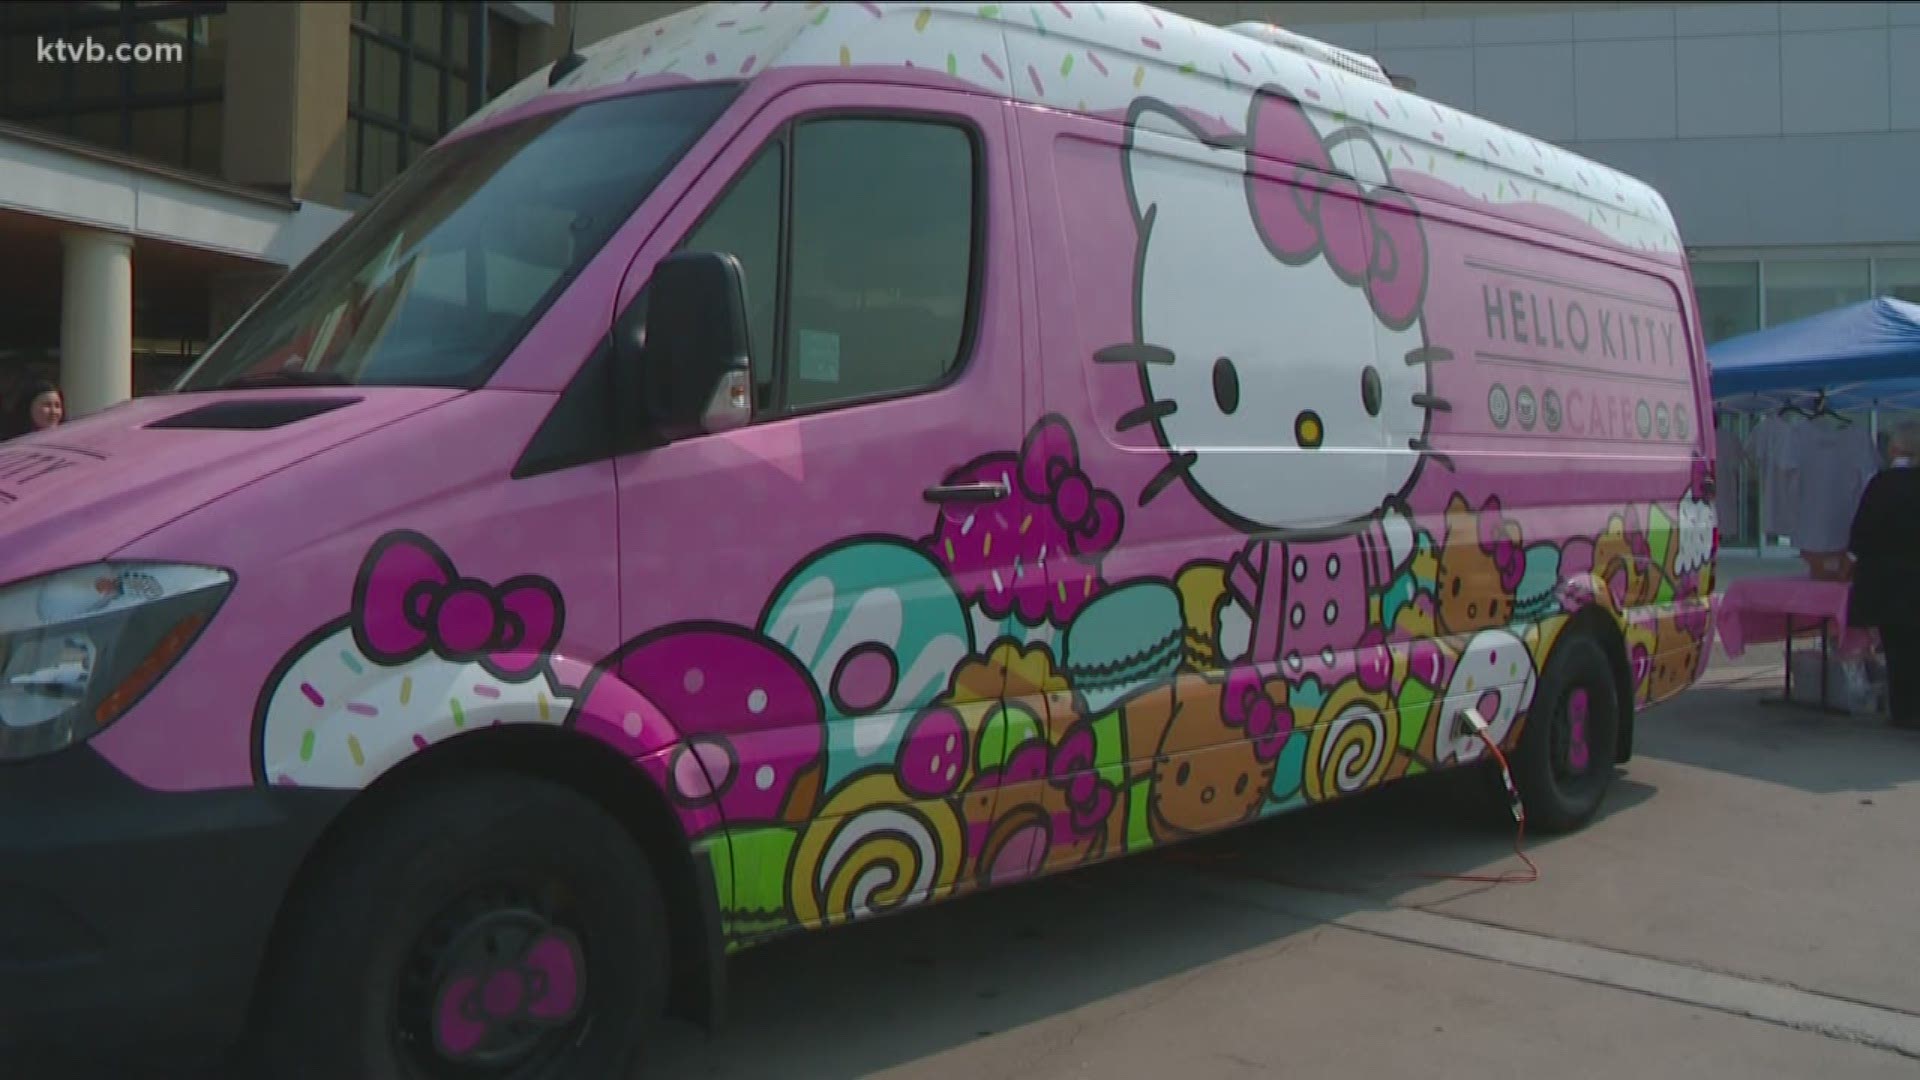 Hello Kitty Cafe Truck in Spokane